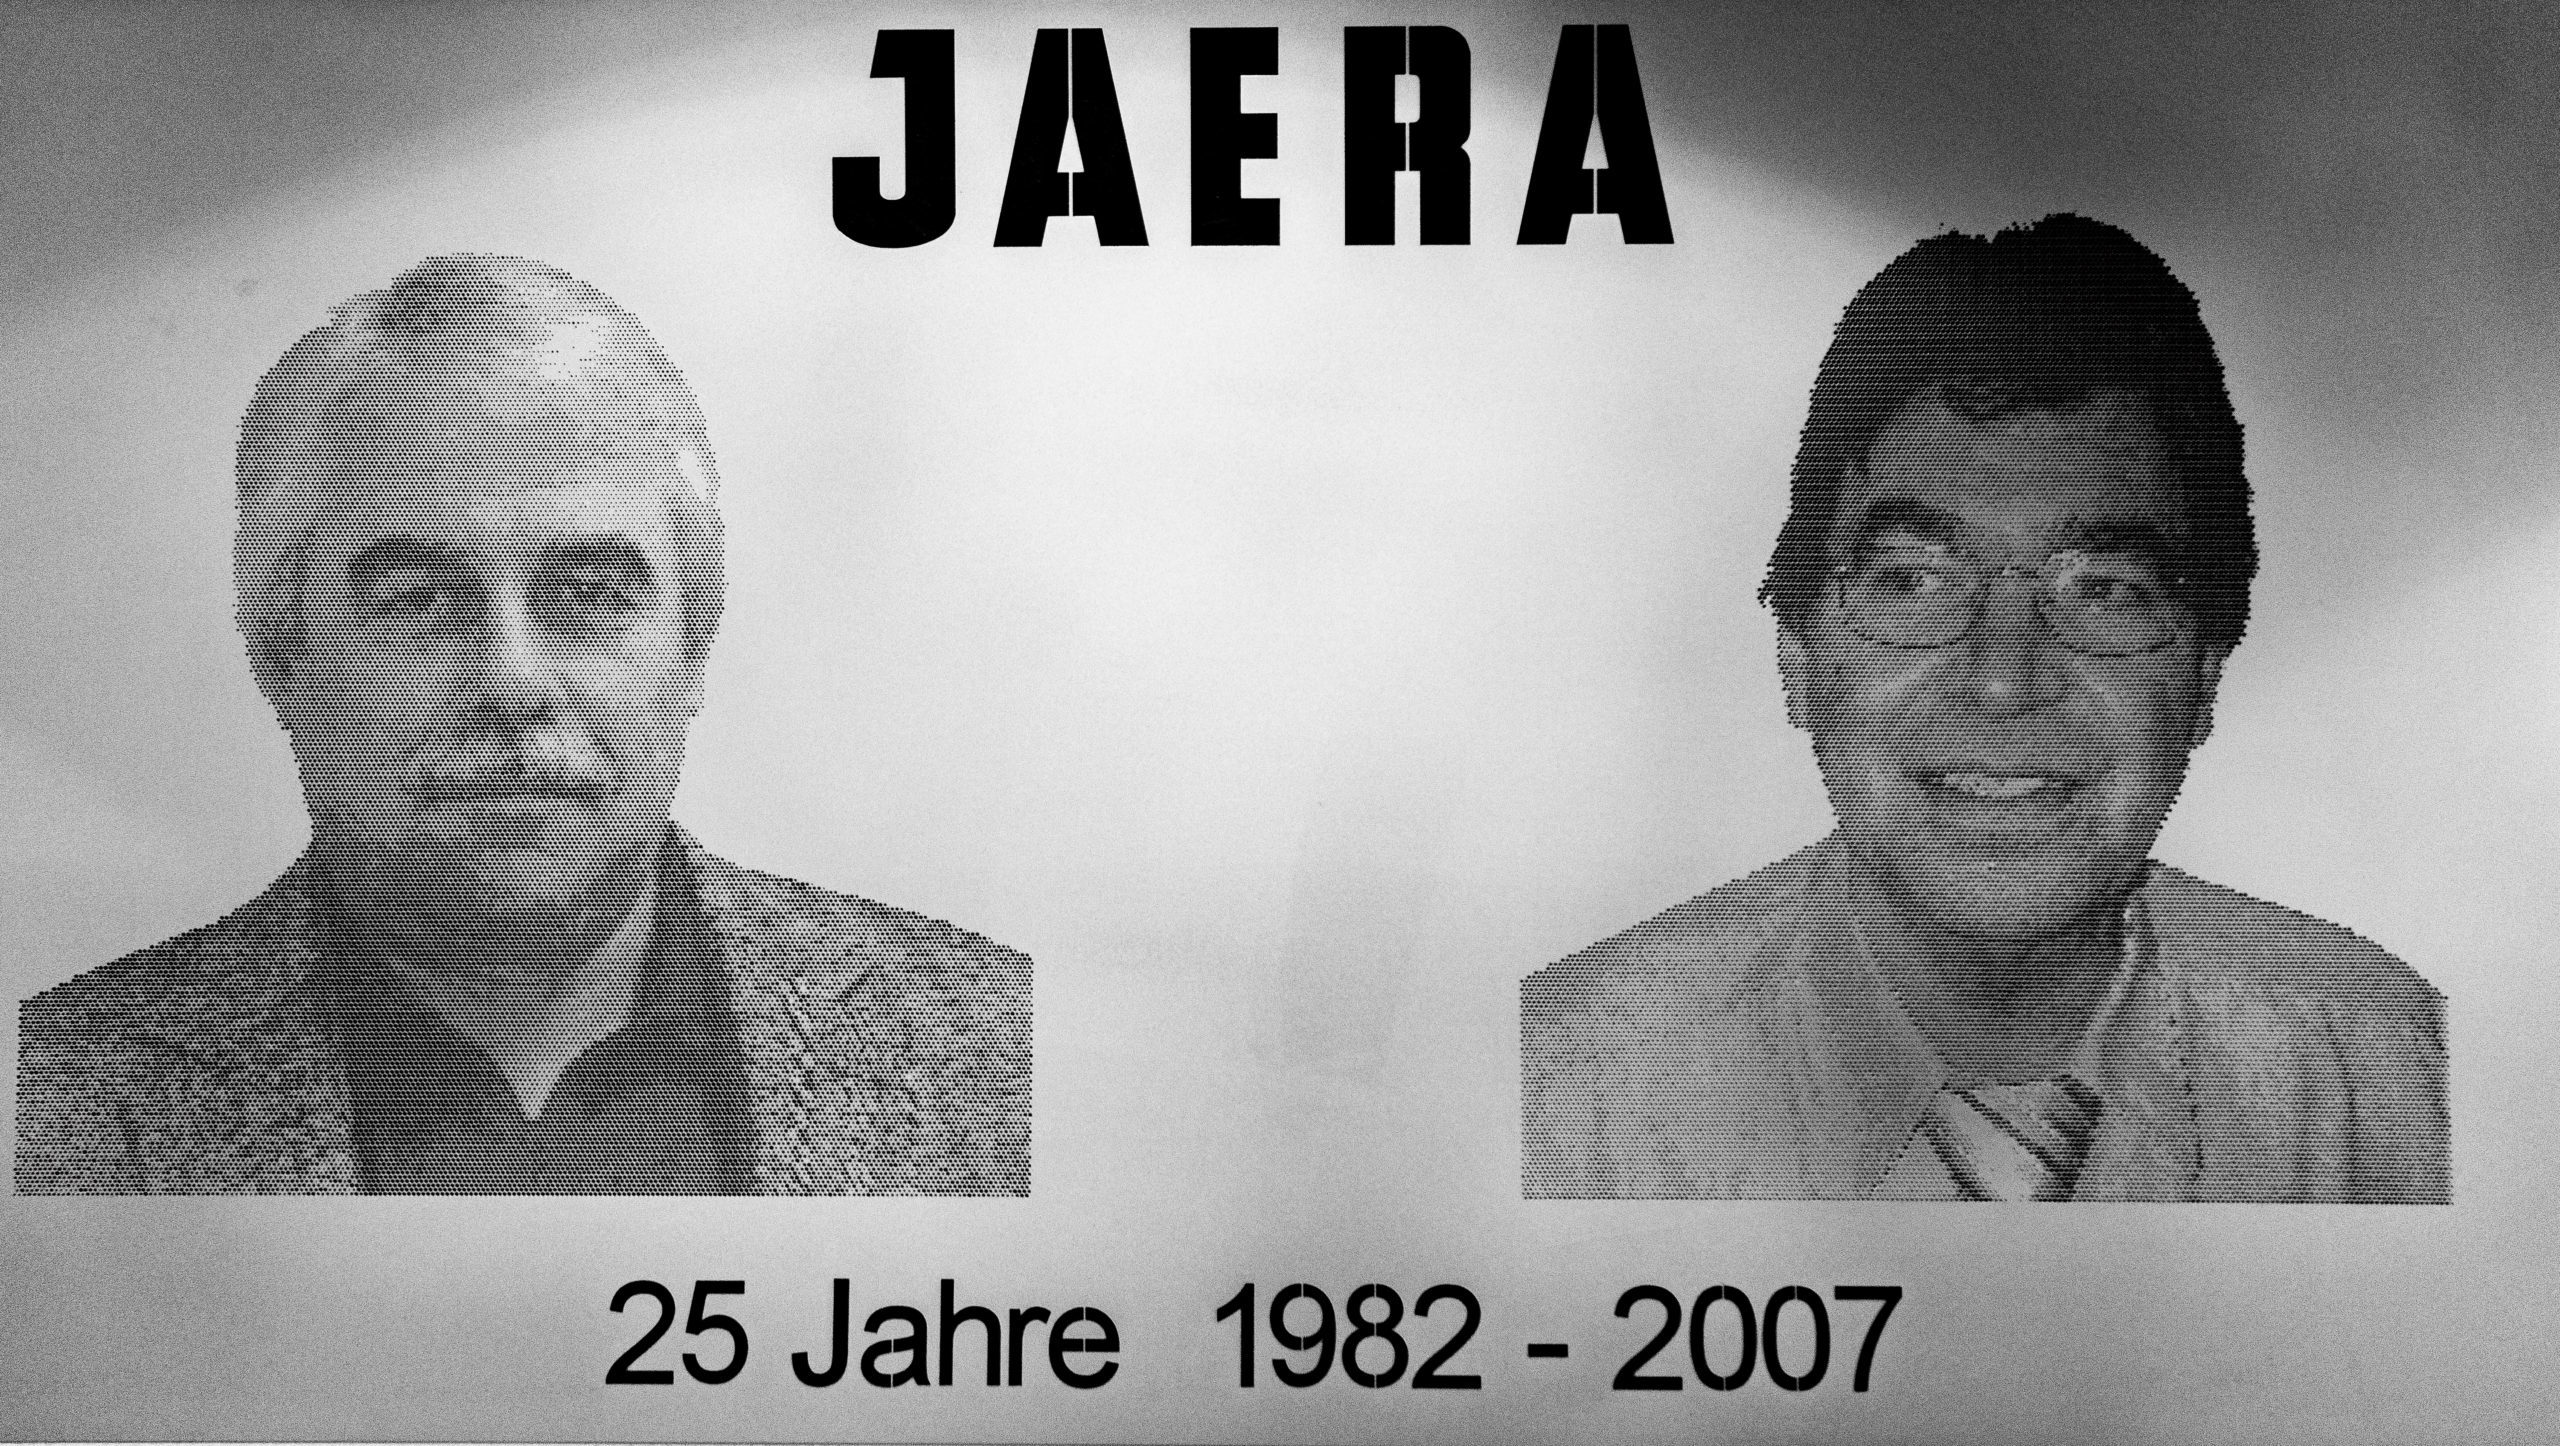 Jaera 25 years of history